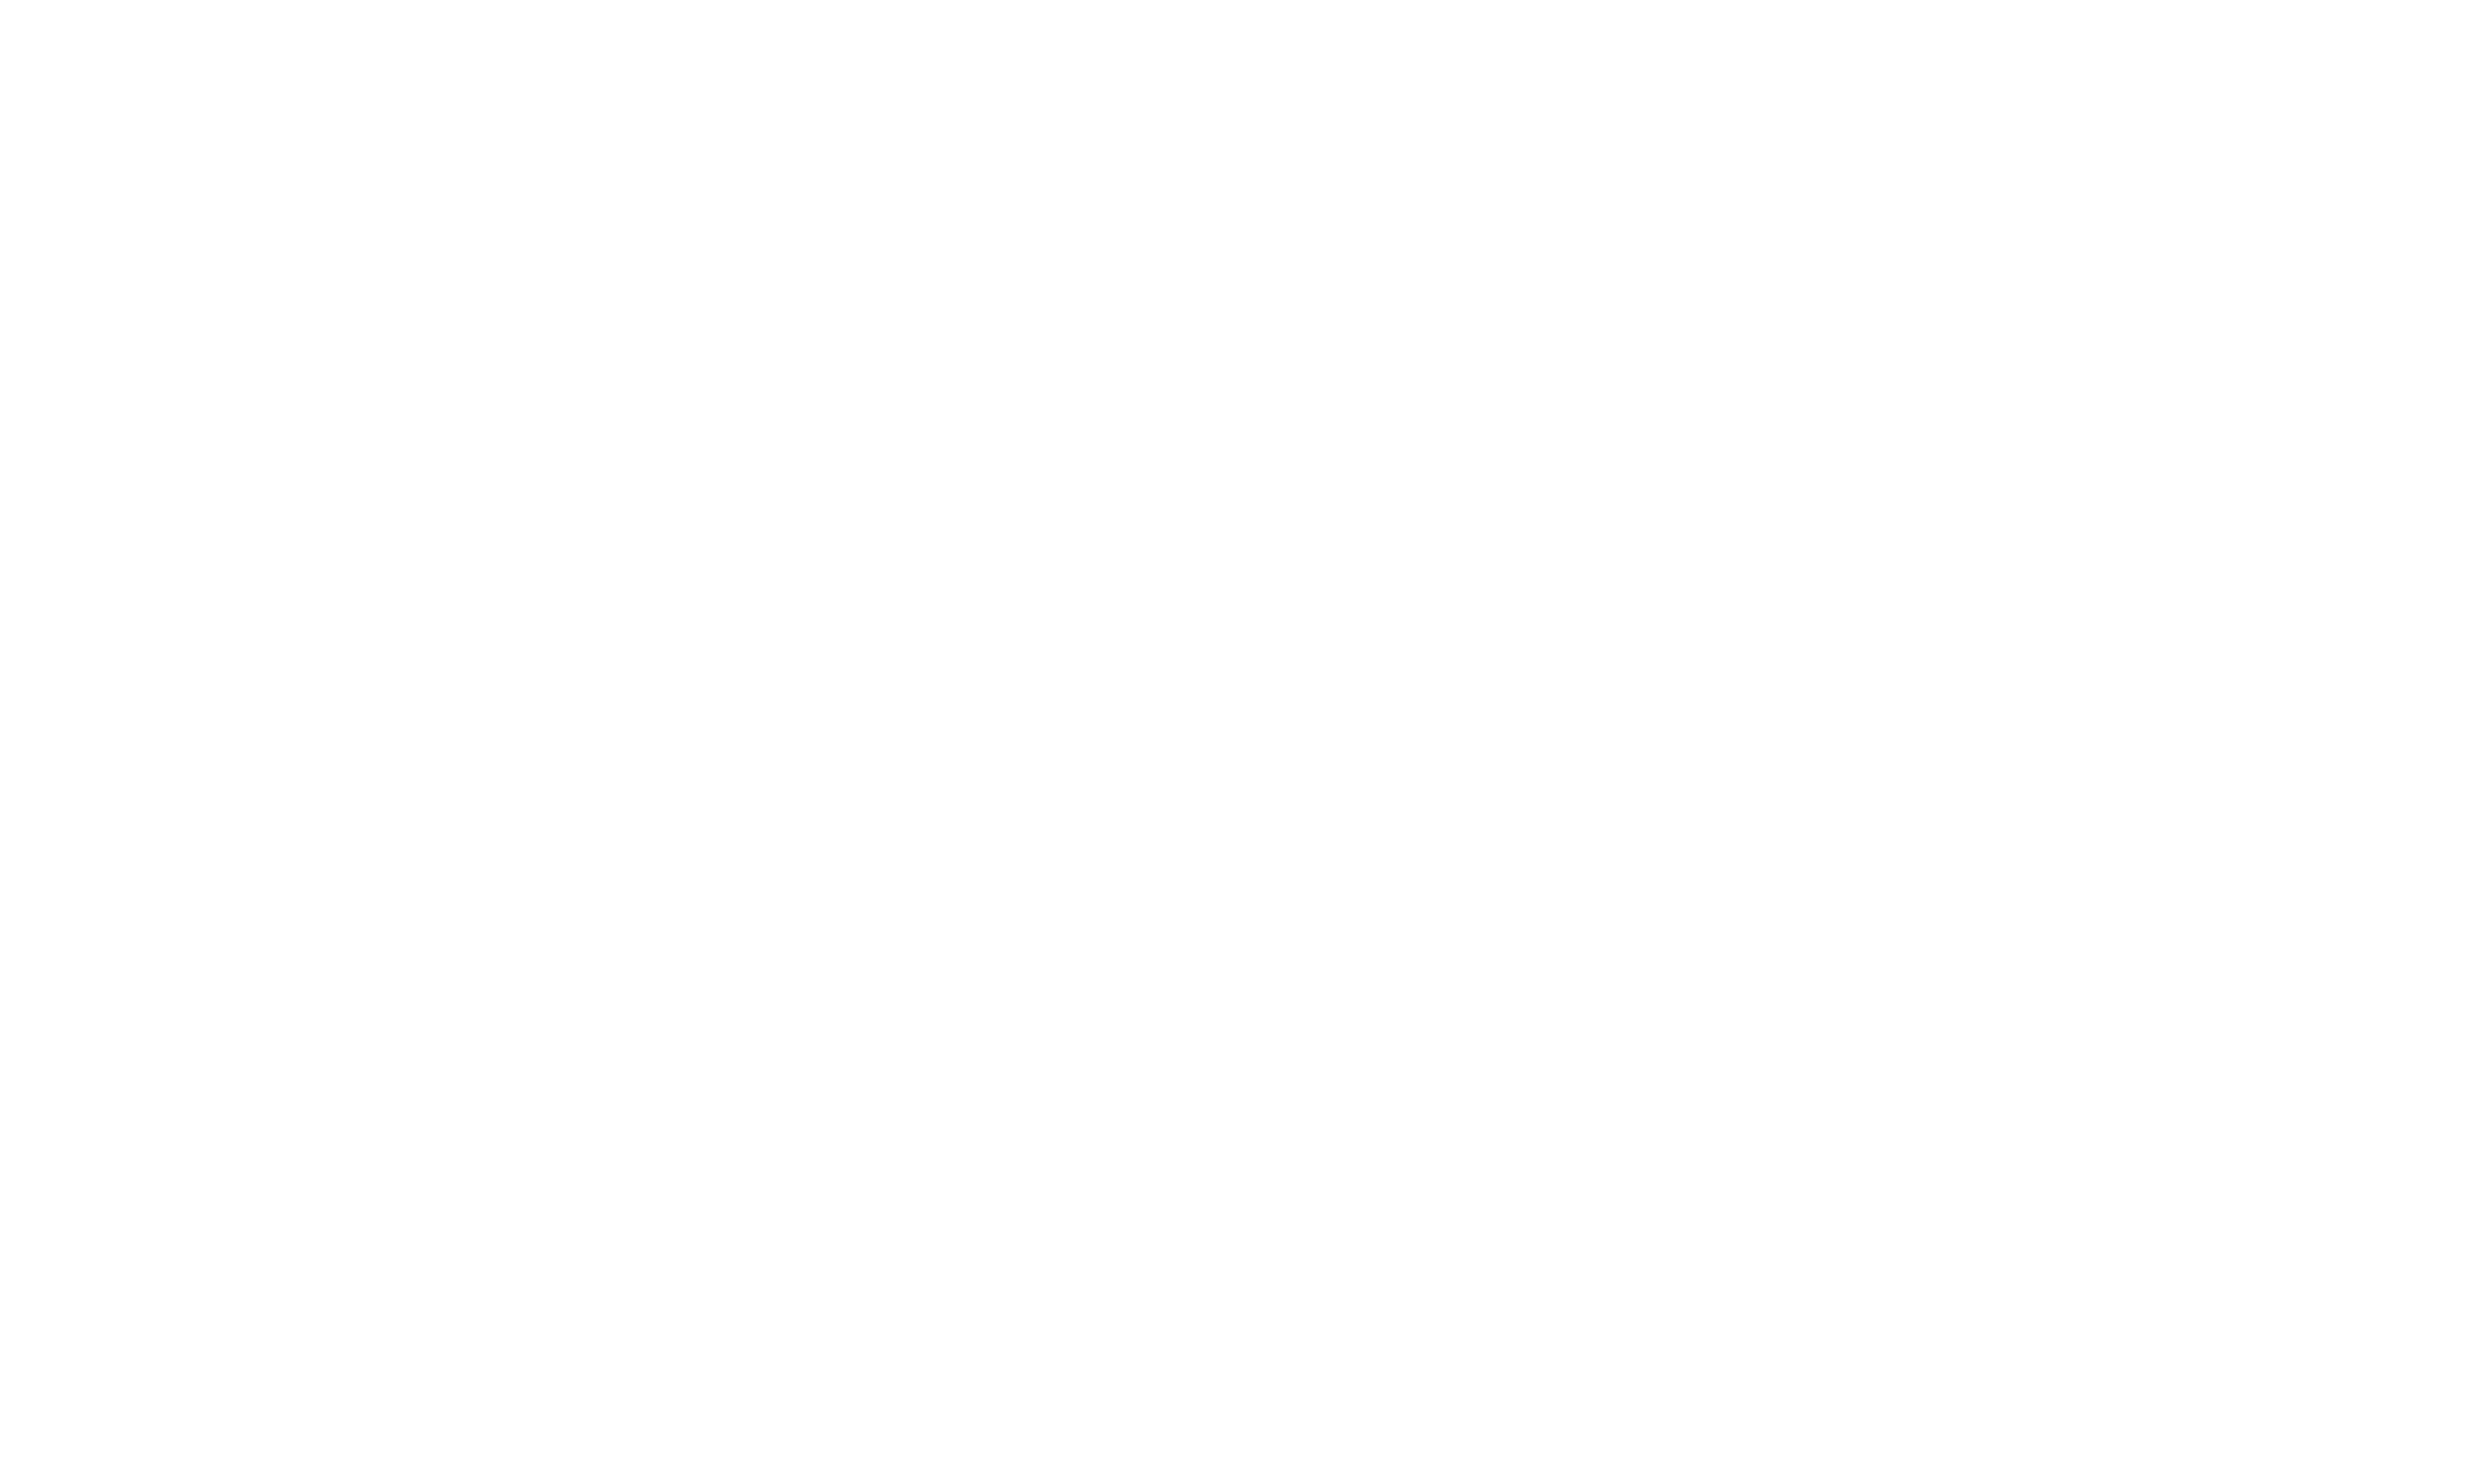 EnRgetica